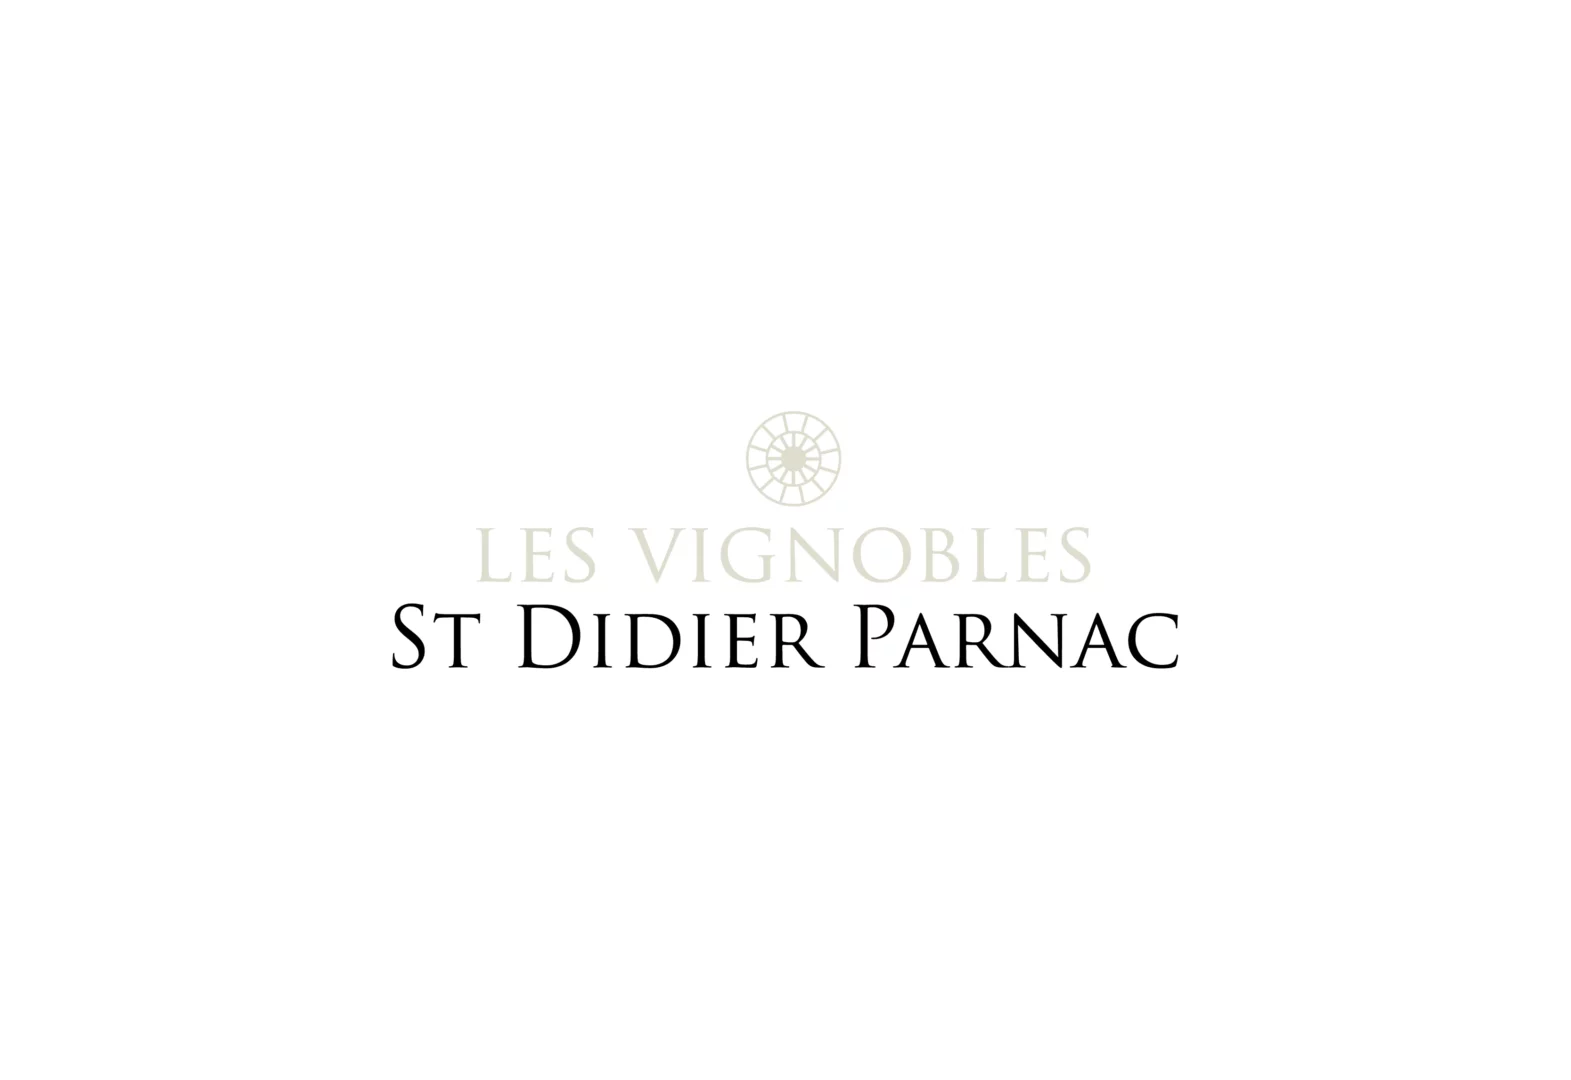 Logos-clients_Vignobles-Saint-Didier-Parnac